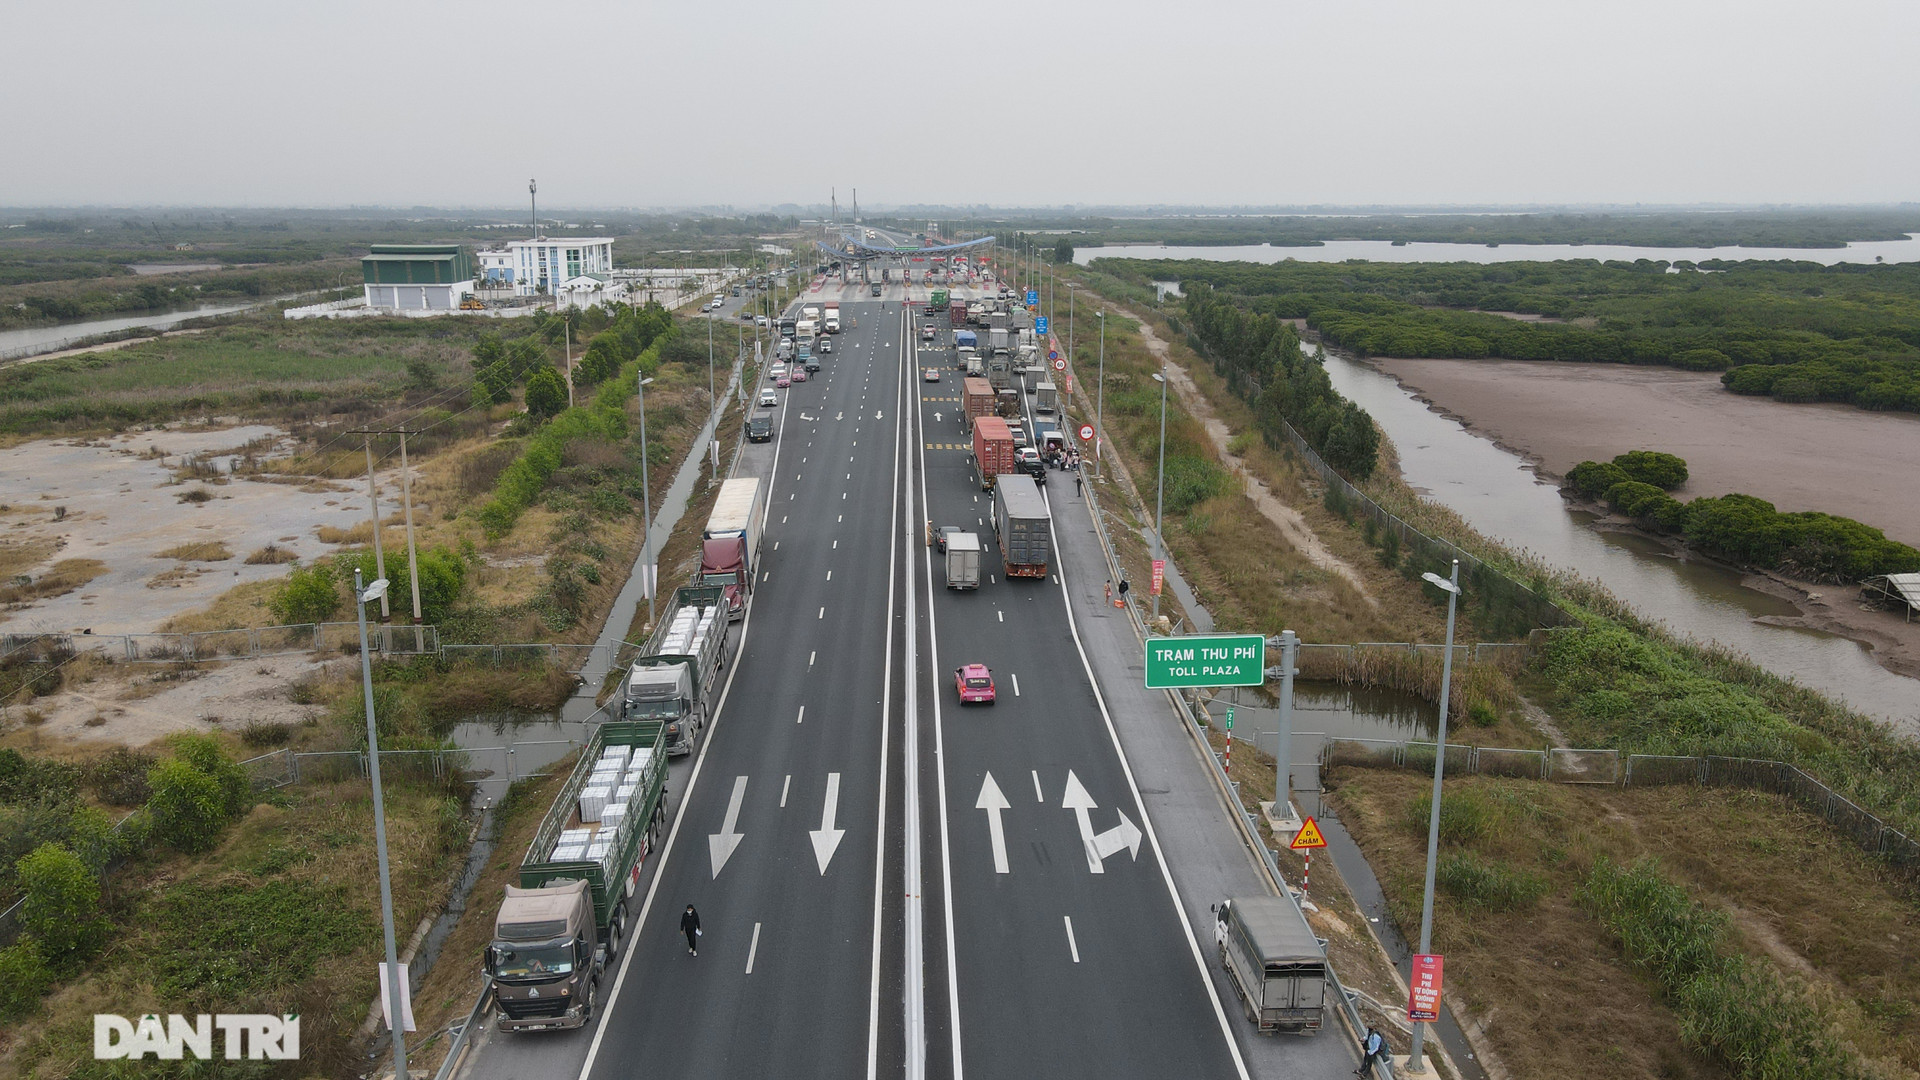 Hình ảnh hàng dài xe tải chở hàng, nối đuôi nhau chờ khai báo y tế trên cao tốc khi qua trạm thu phí đầu cầu Bạch Đằng.